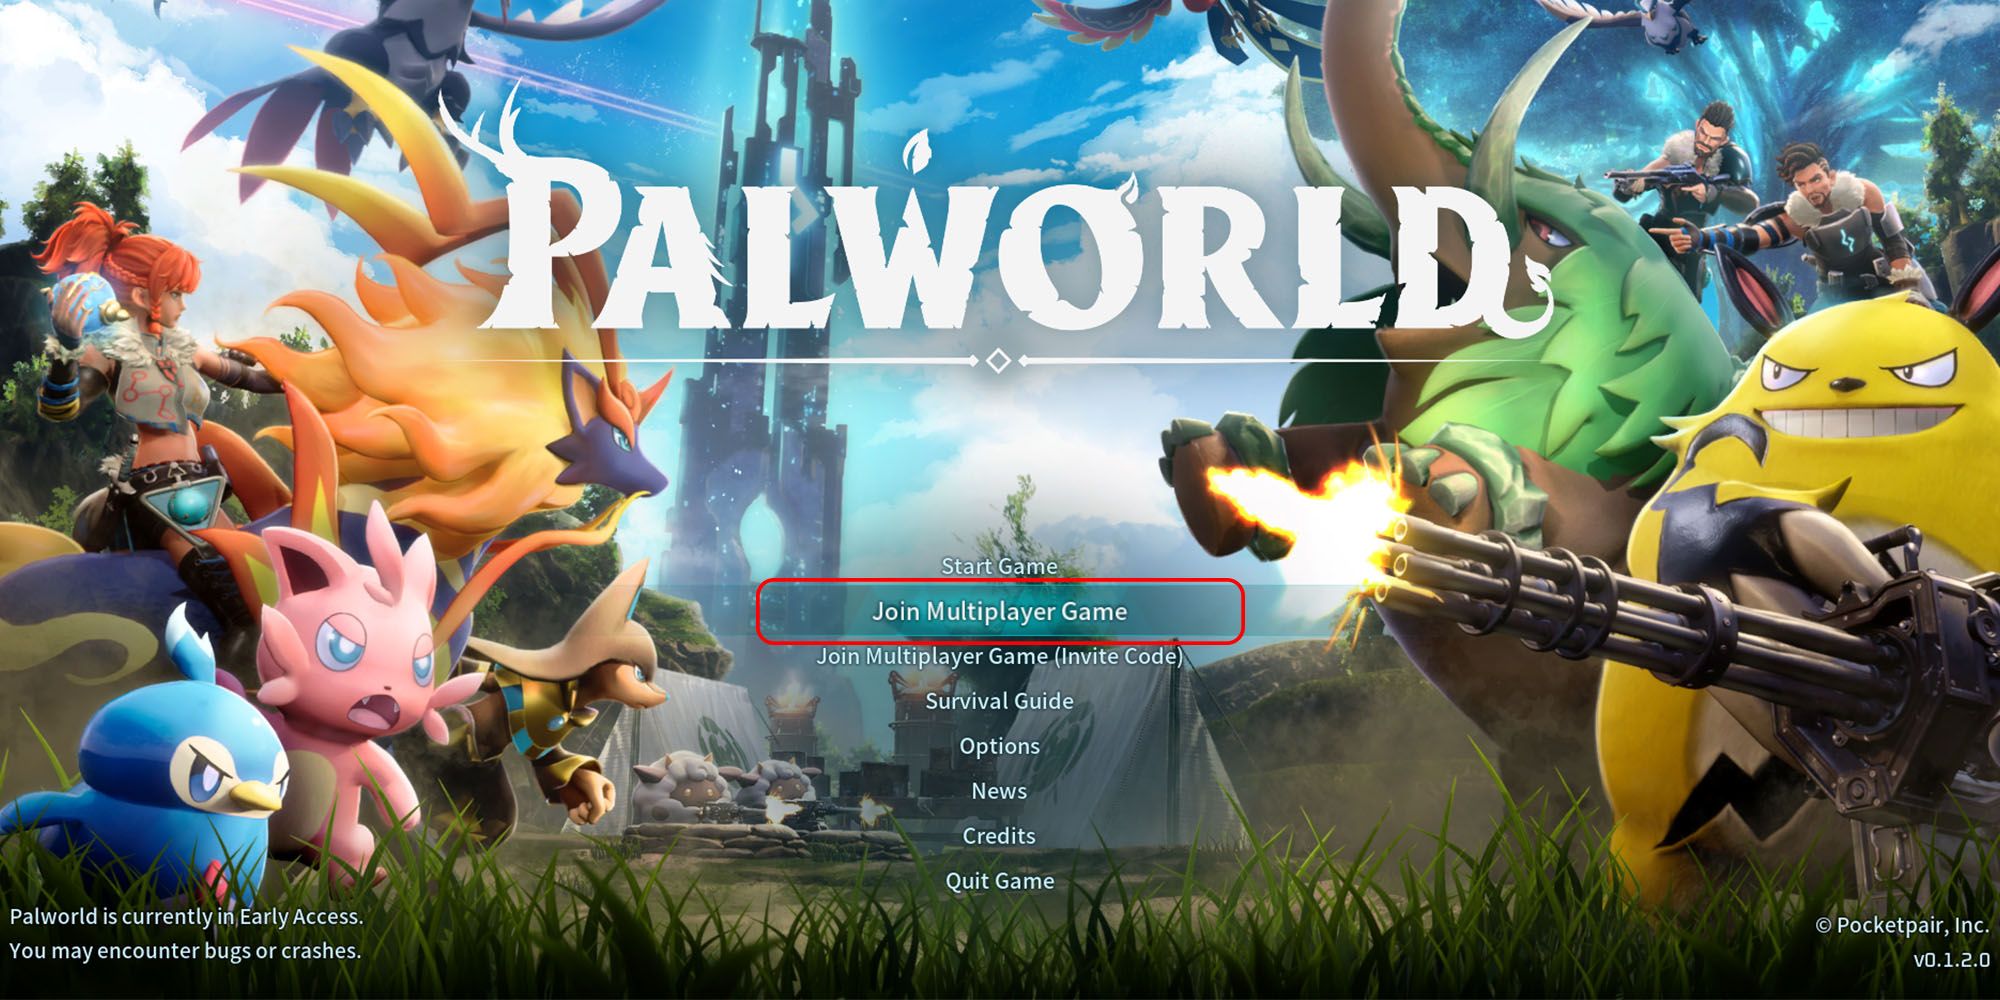 Palworld - Passe o mouse sobre a opção de jogo multijogador